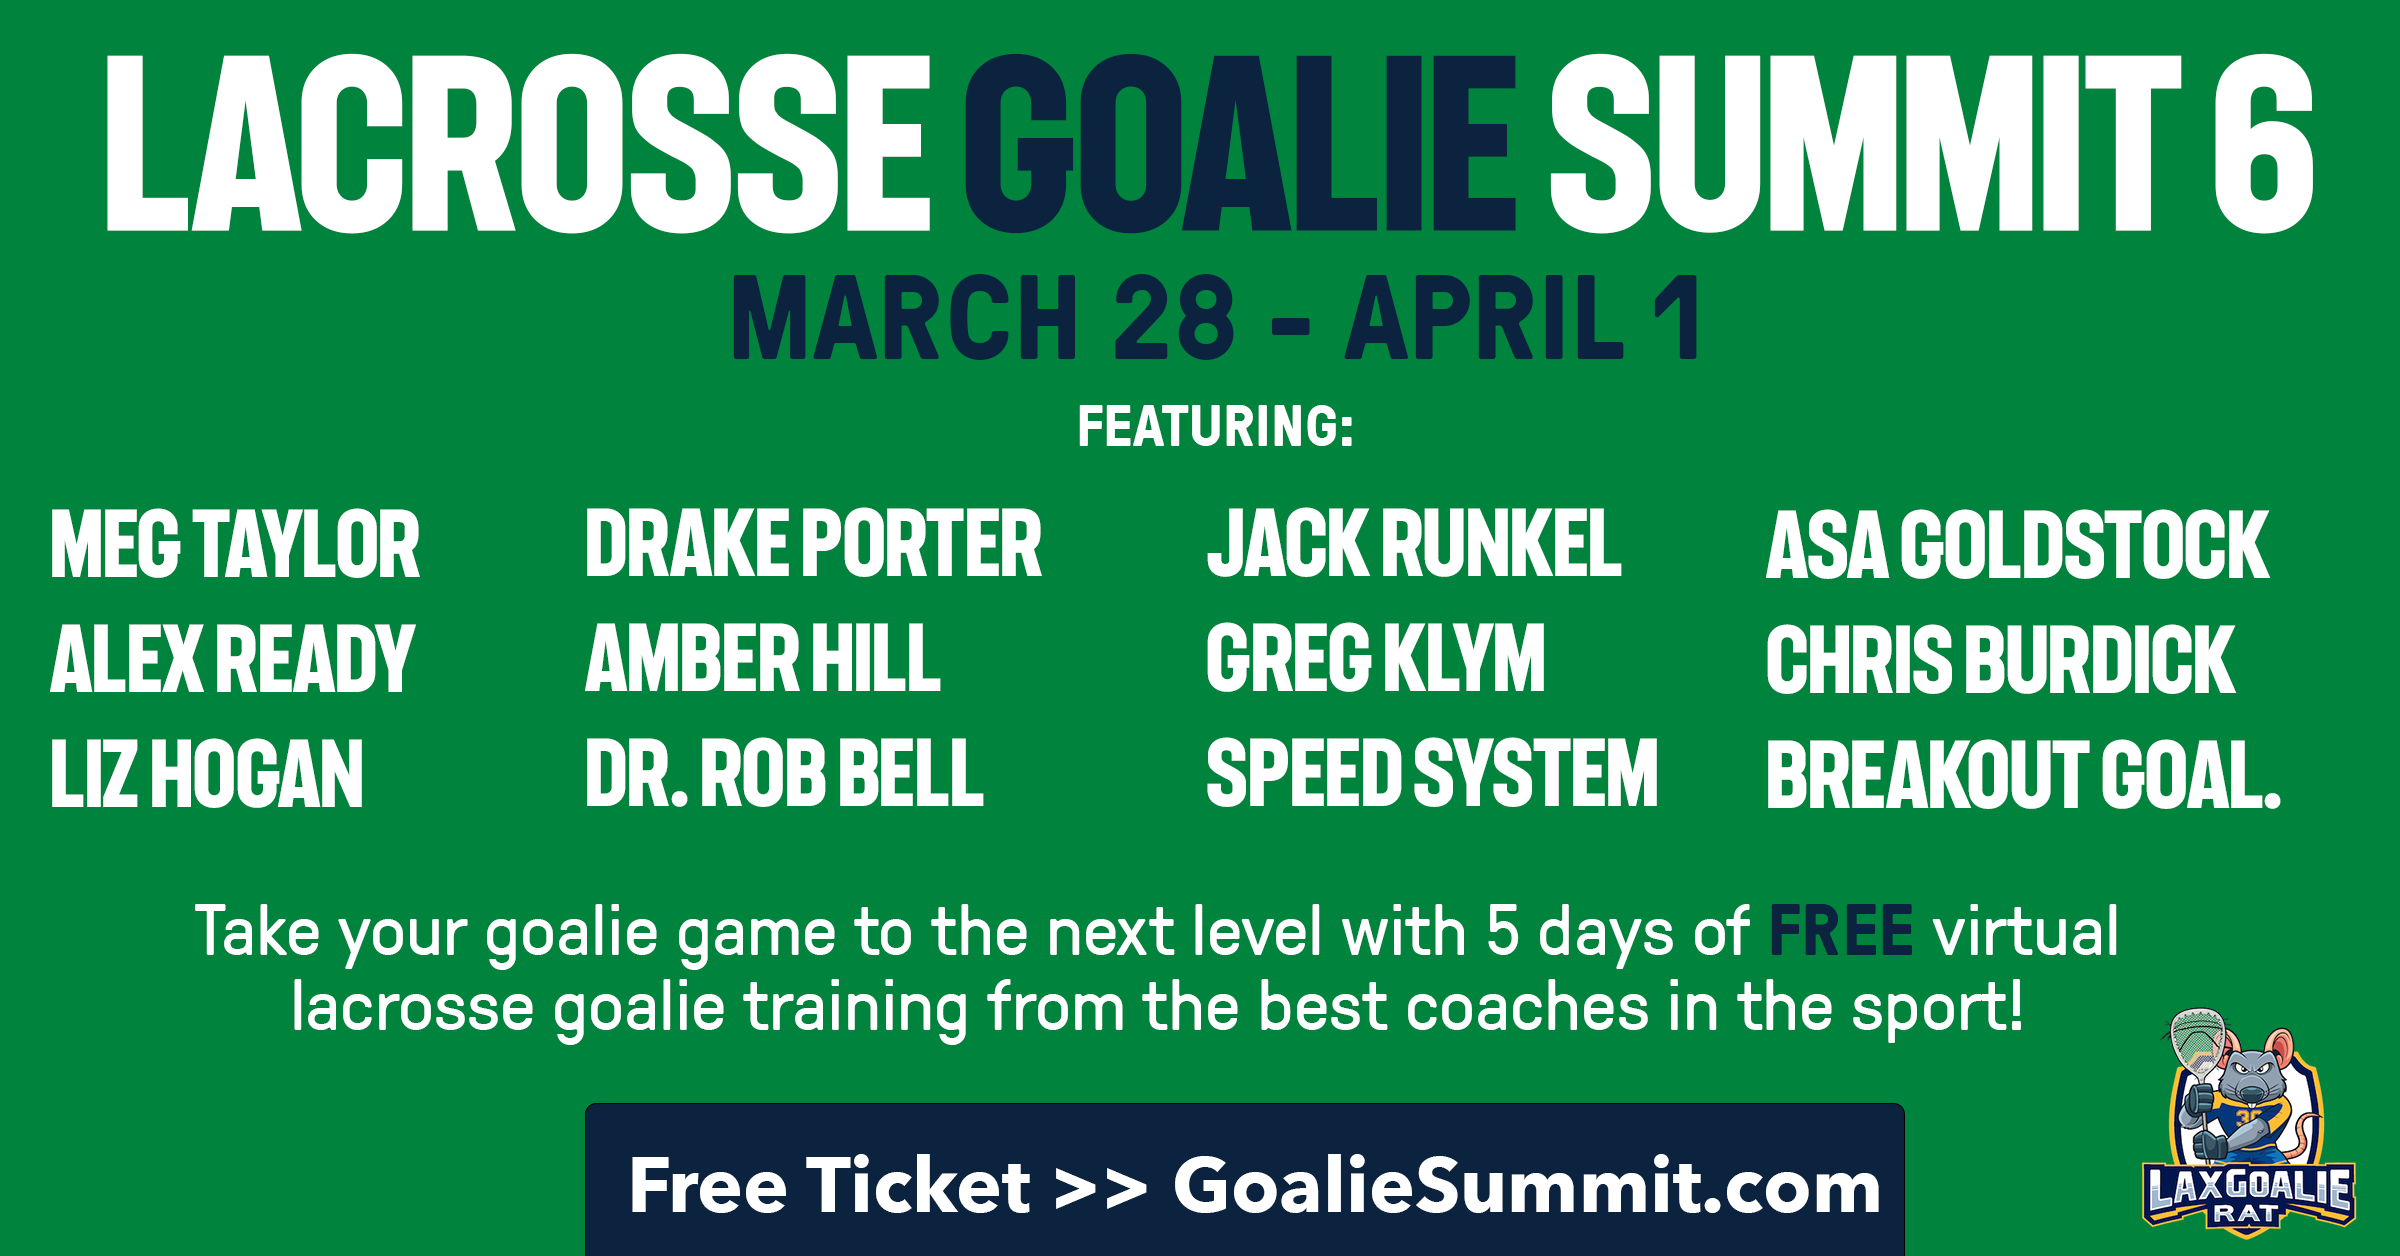 Lacrosse Goalie Summit 6